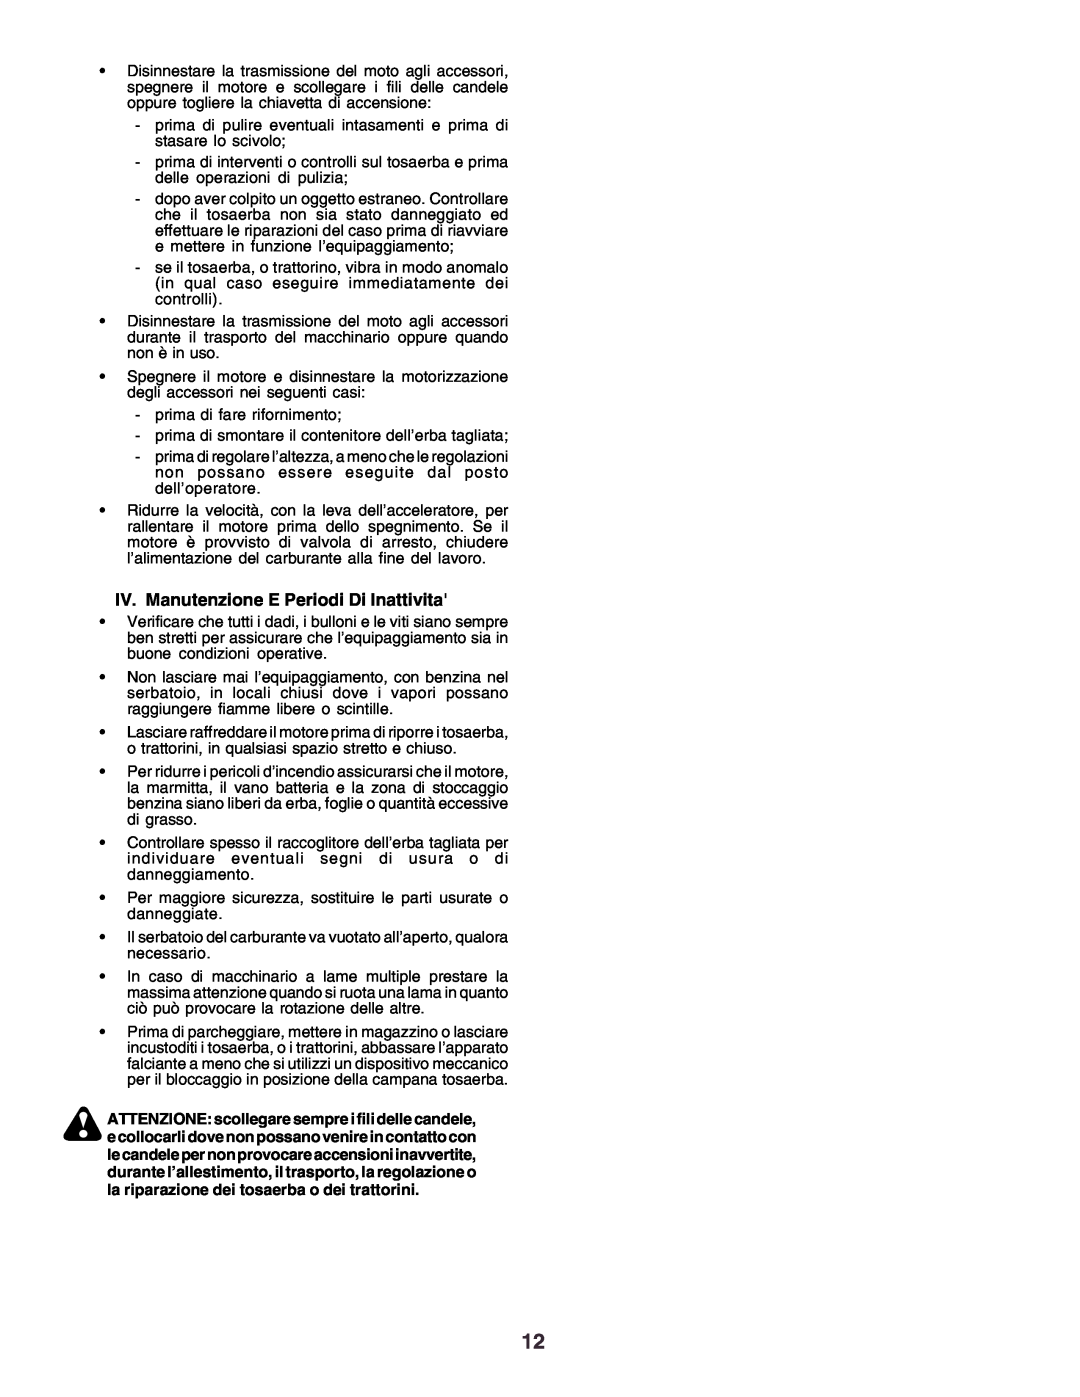 Husqvarna YTH170 instruction manual IV. Manutenzione E Periodi Di Inattivita 